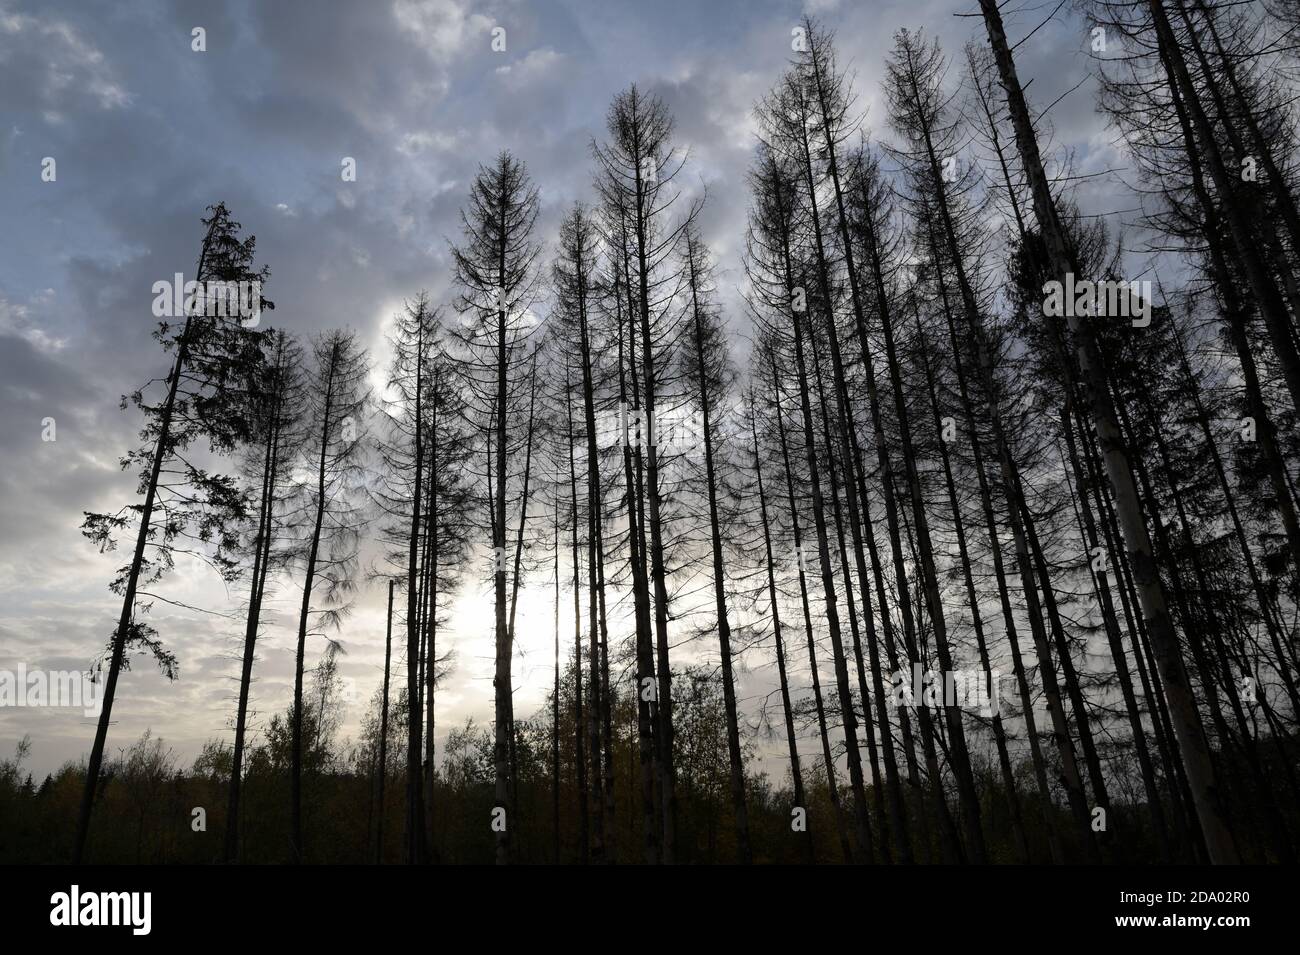 Waldsterben, forest decline Stock Photo